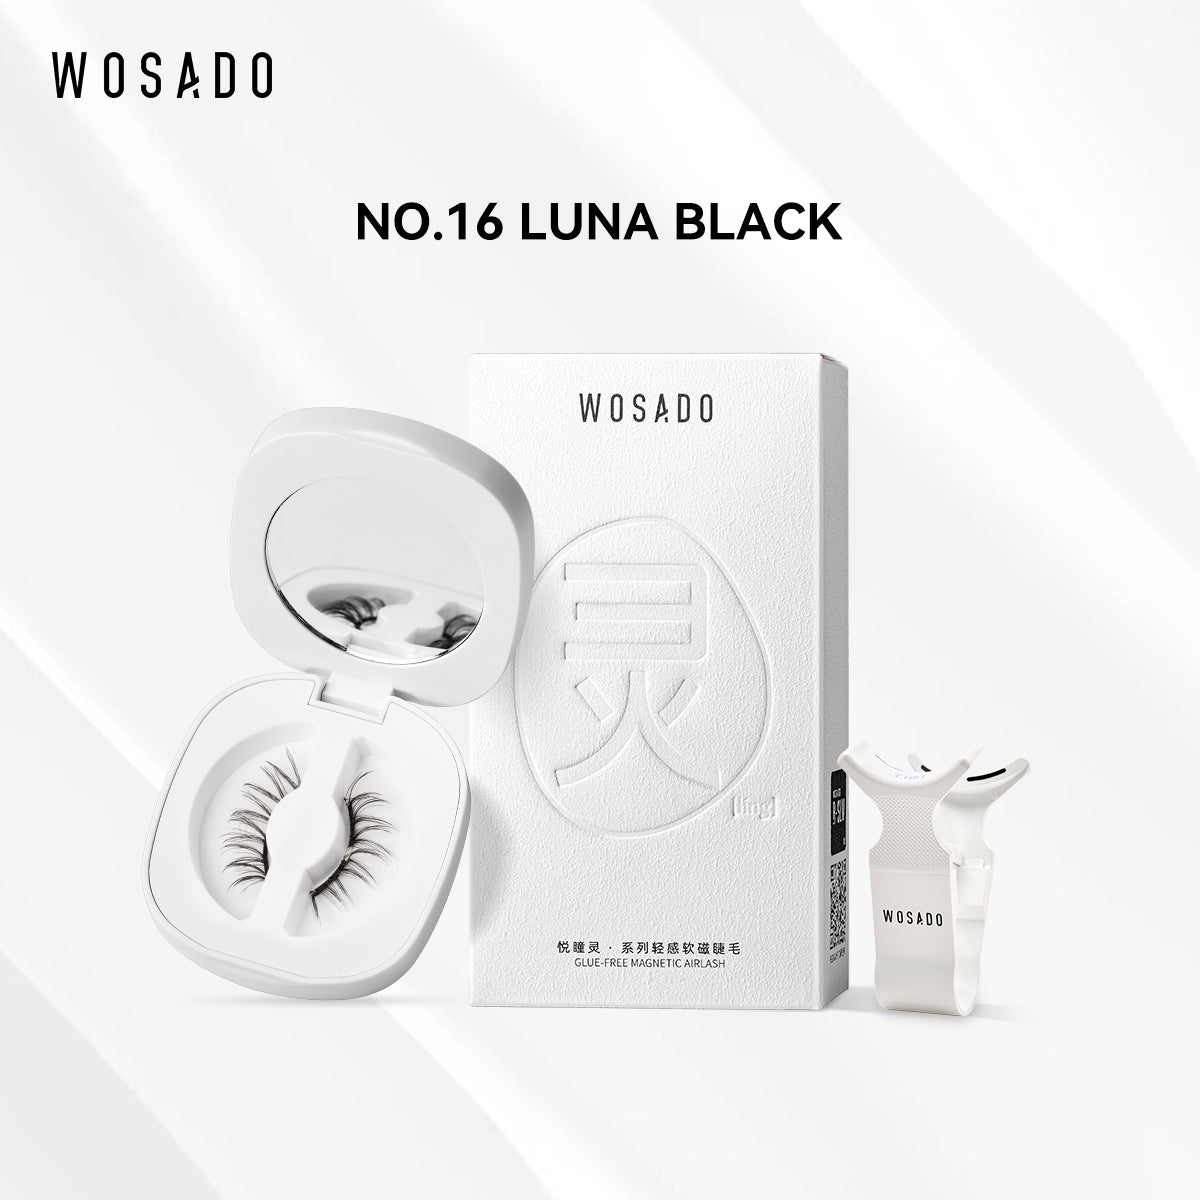 【WOSADO】NO.16 LUNA BLACK